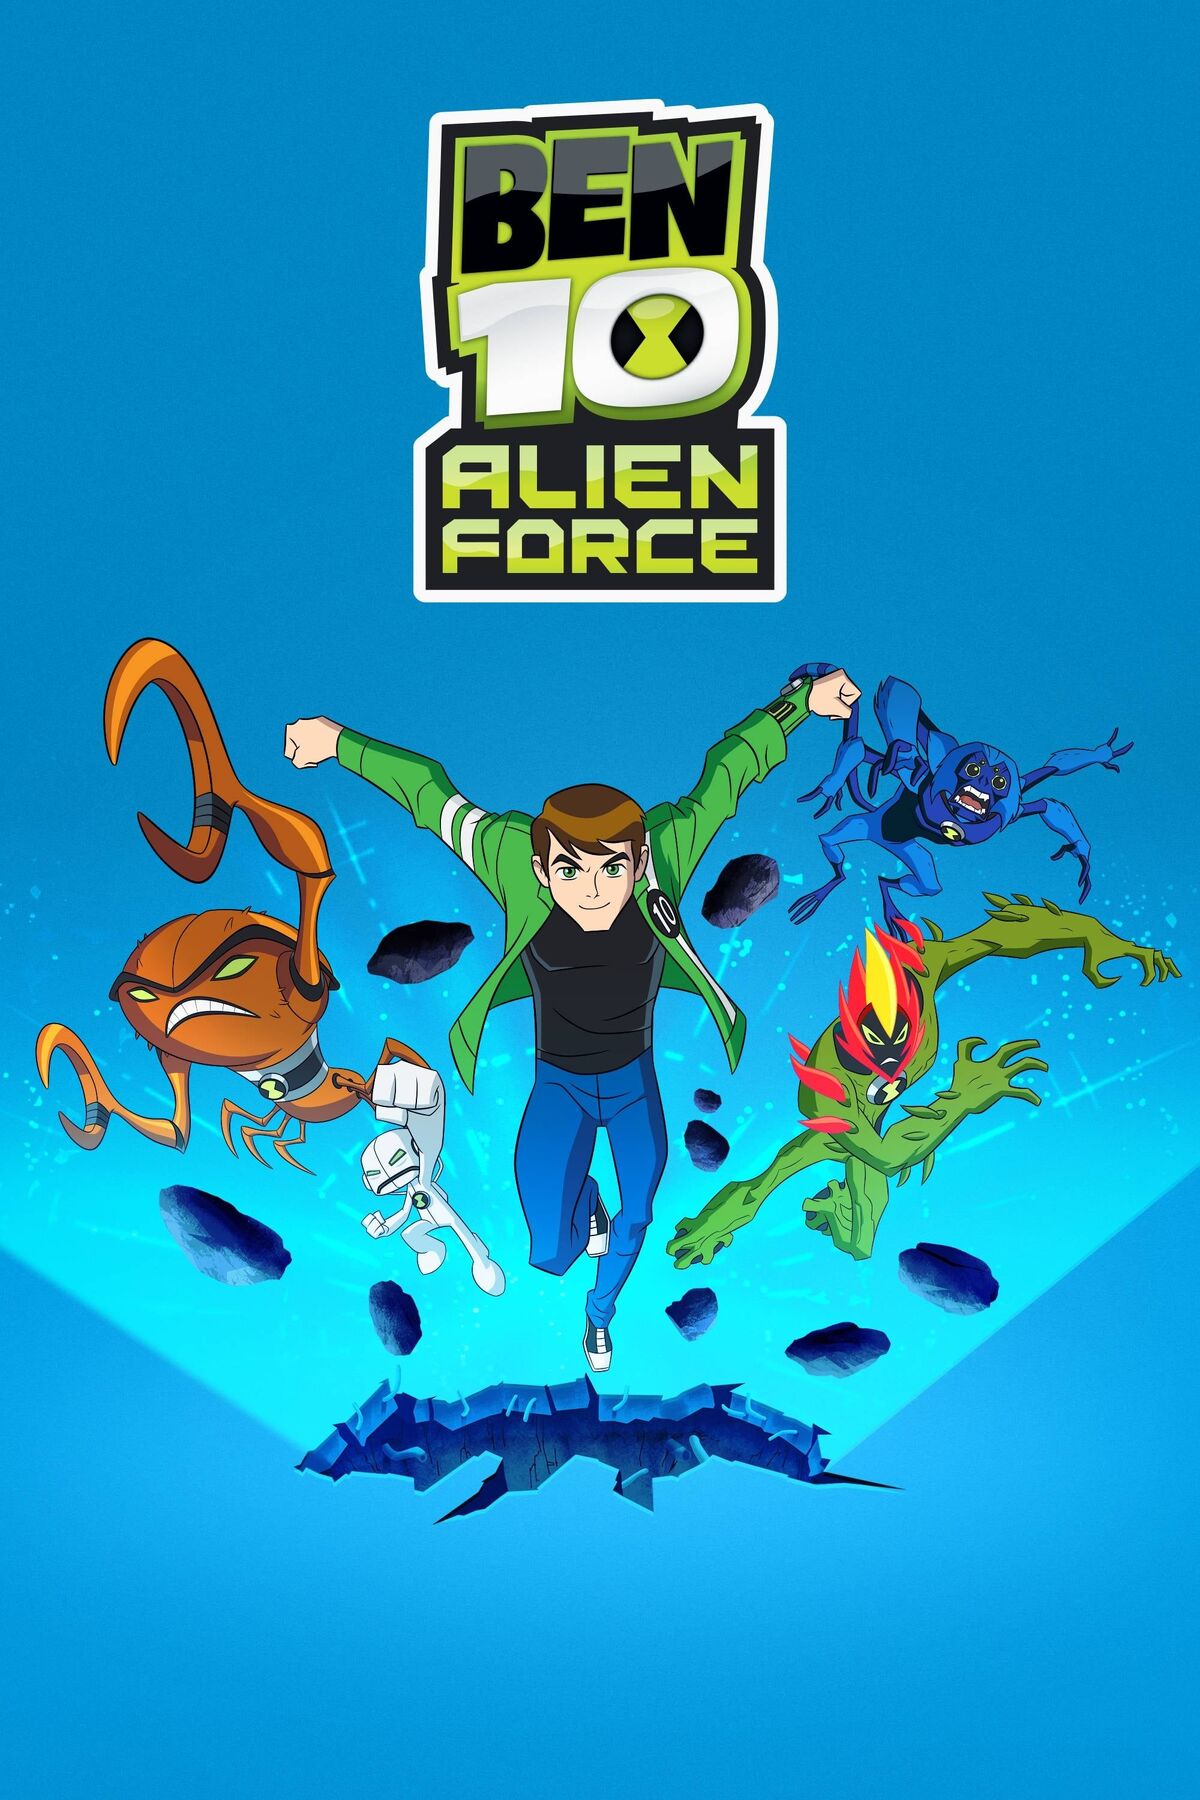  Ben 10: Alien Force Complete Season 1 - Cartoon Network, Warner Bros. UK